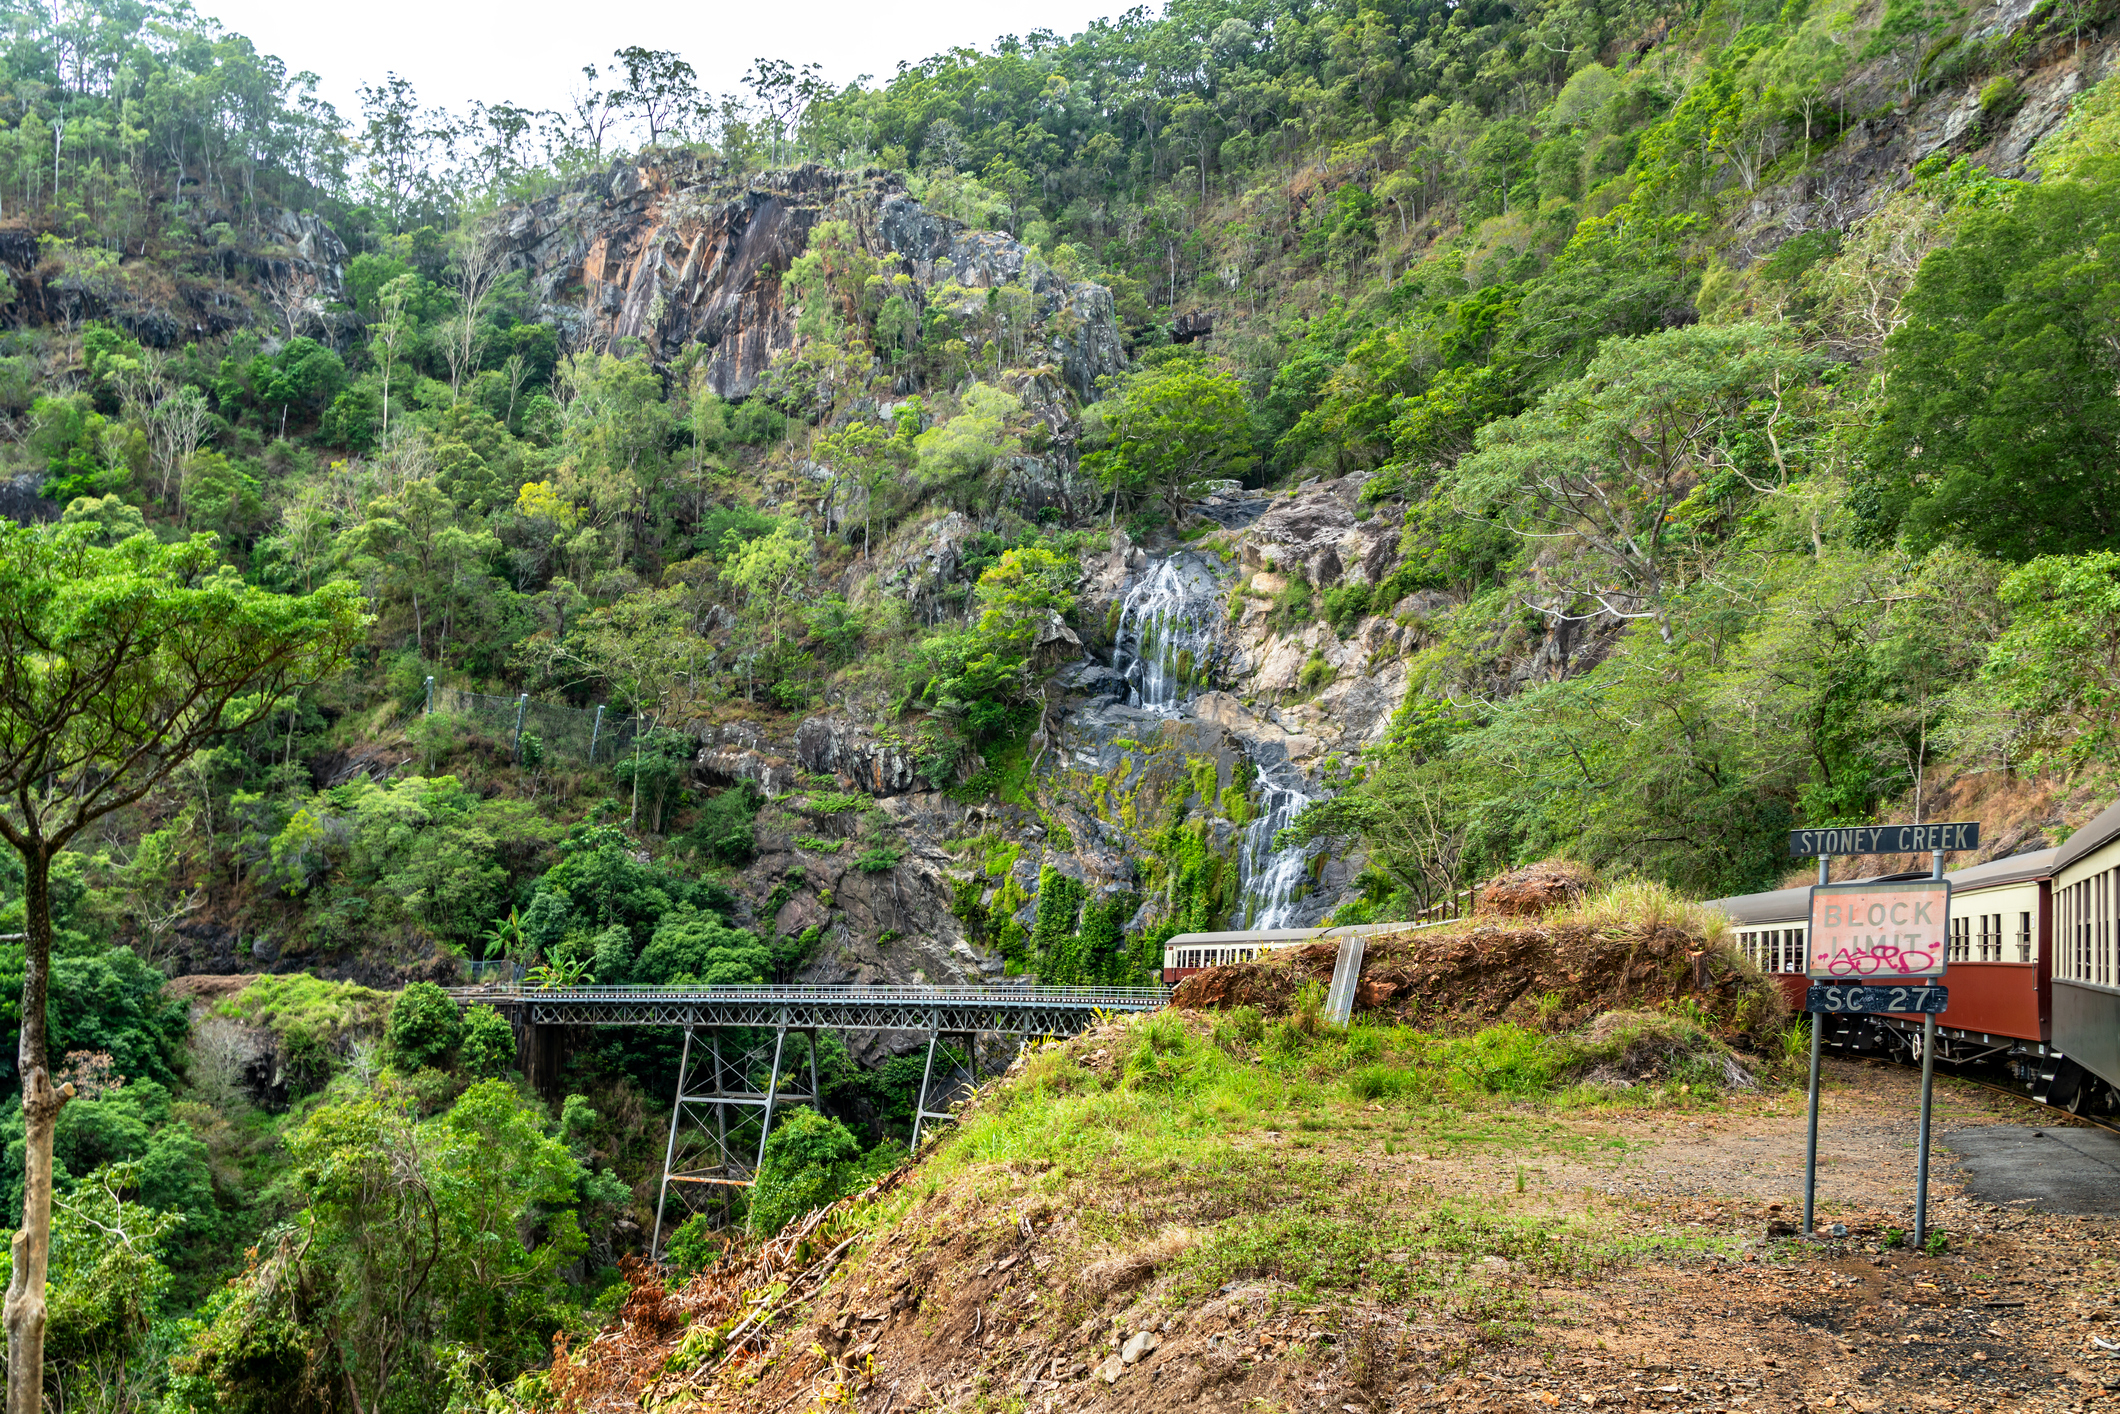 Le chemin de fer panoramique de Kuranda, en Australie, est situé à proximité de chutes impressionnantes.